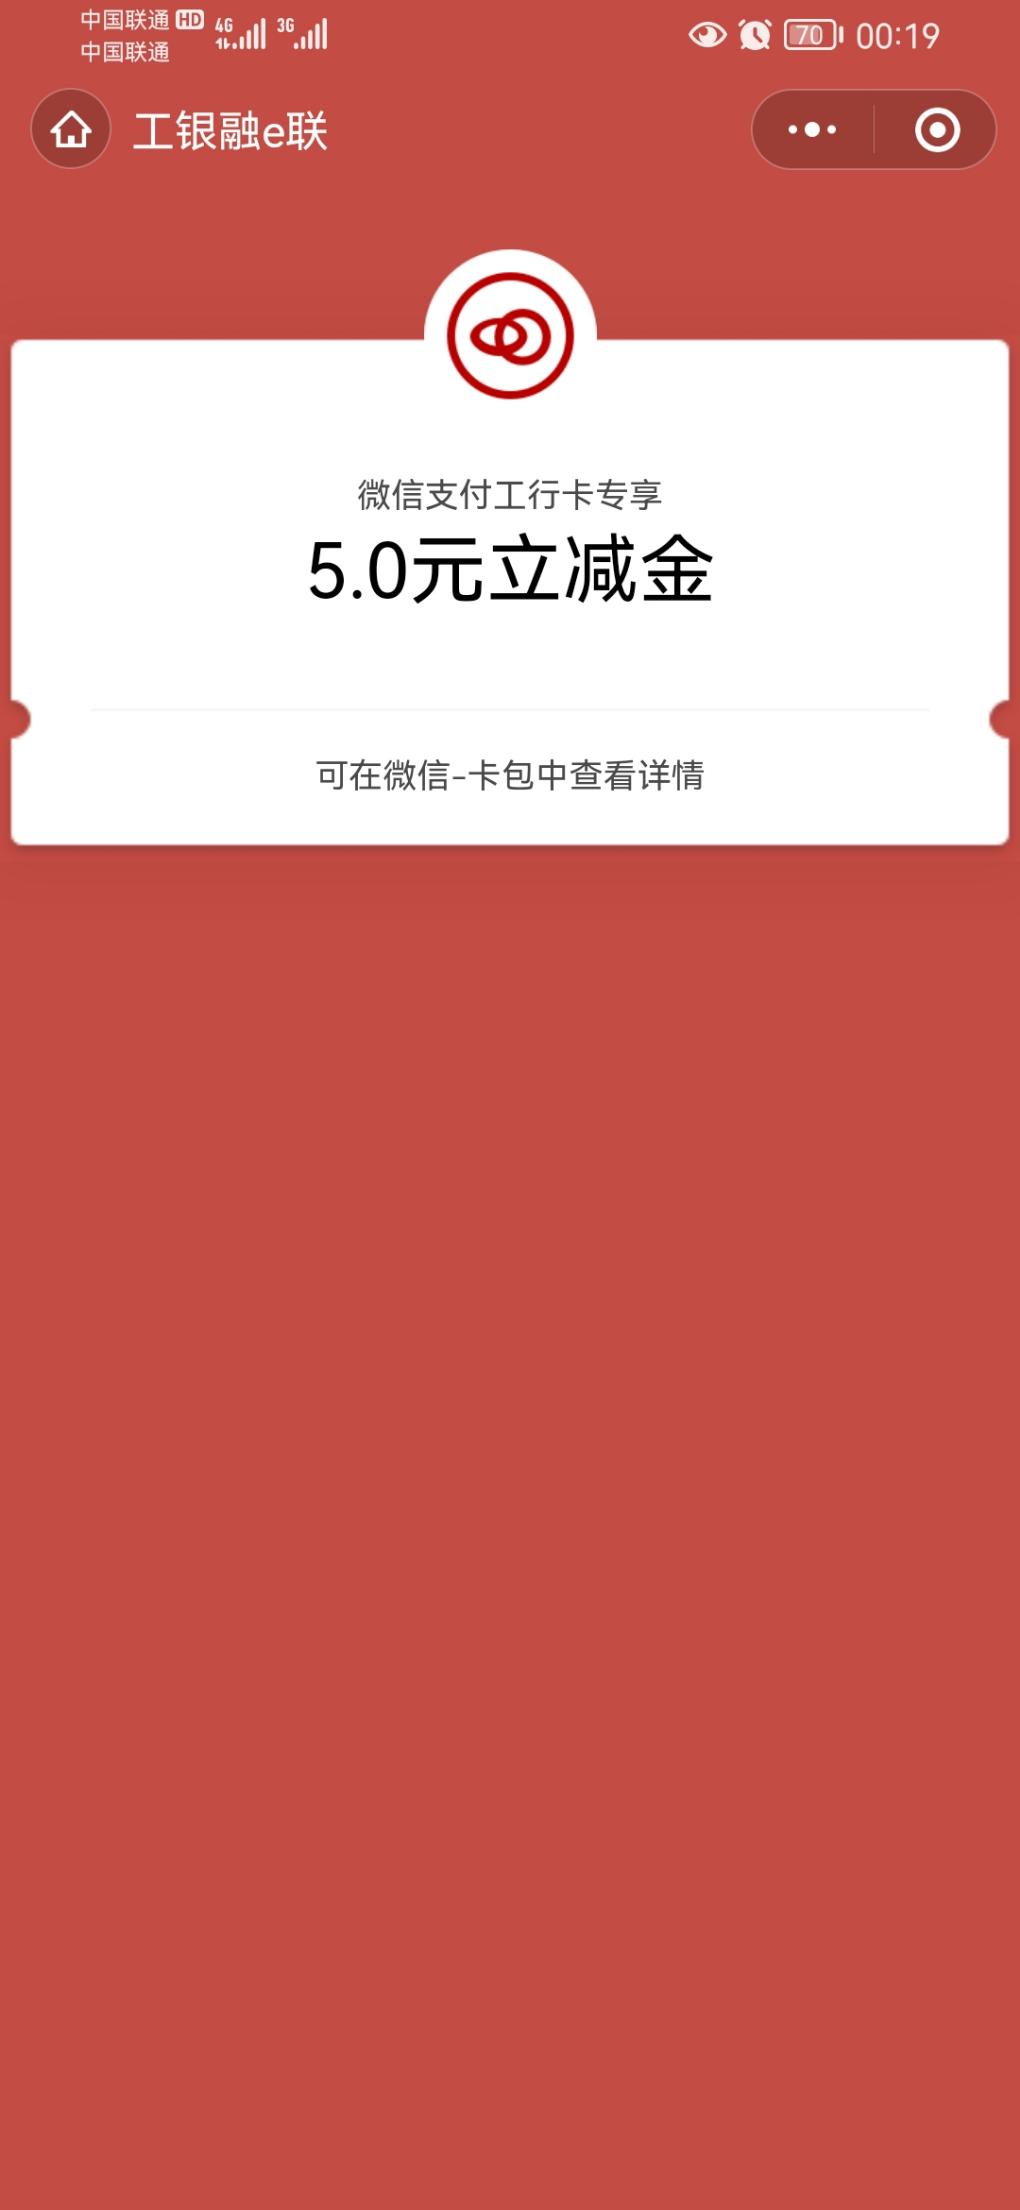 工行app登录中V.x立减金-惠小助(52huixz.com)